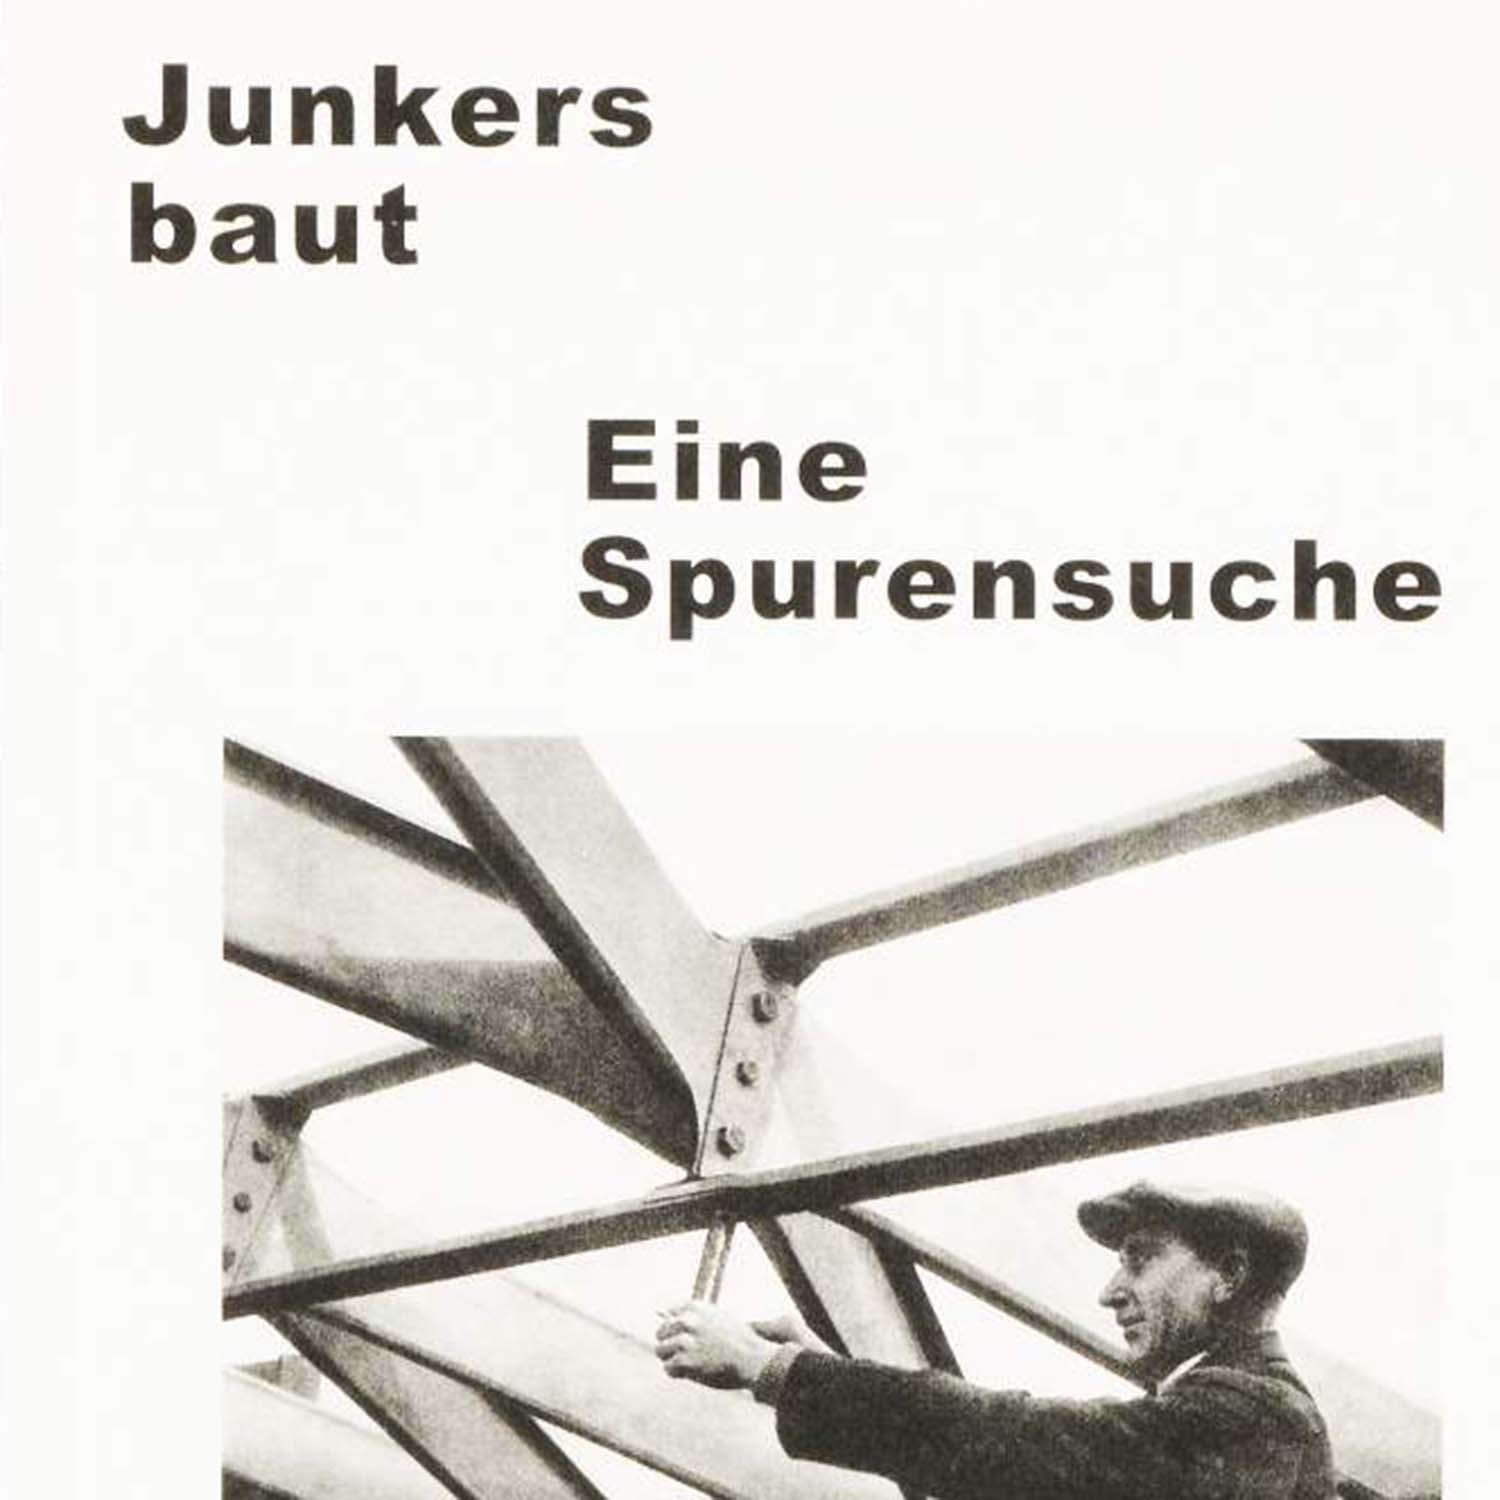 صورة يبني Junkers
